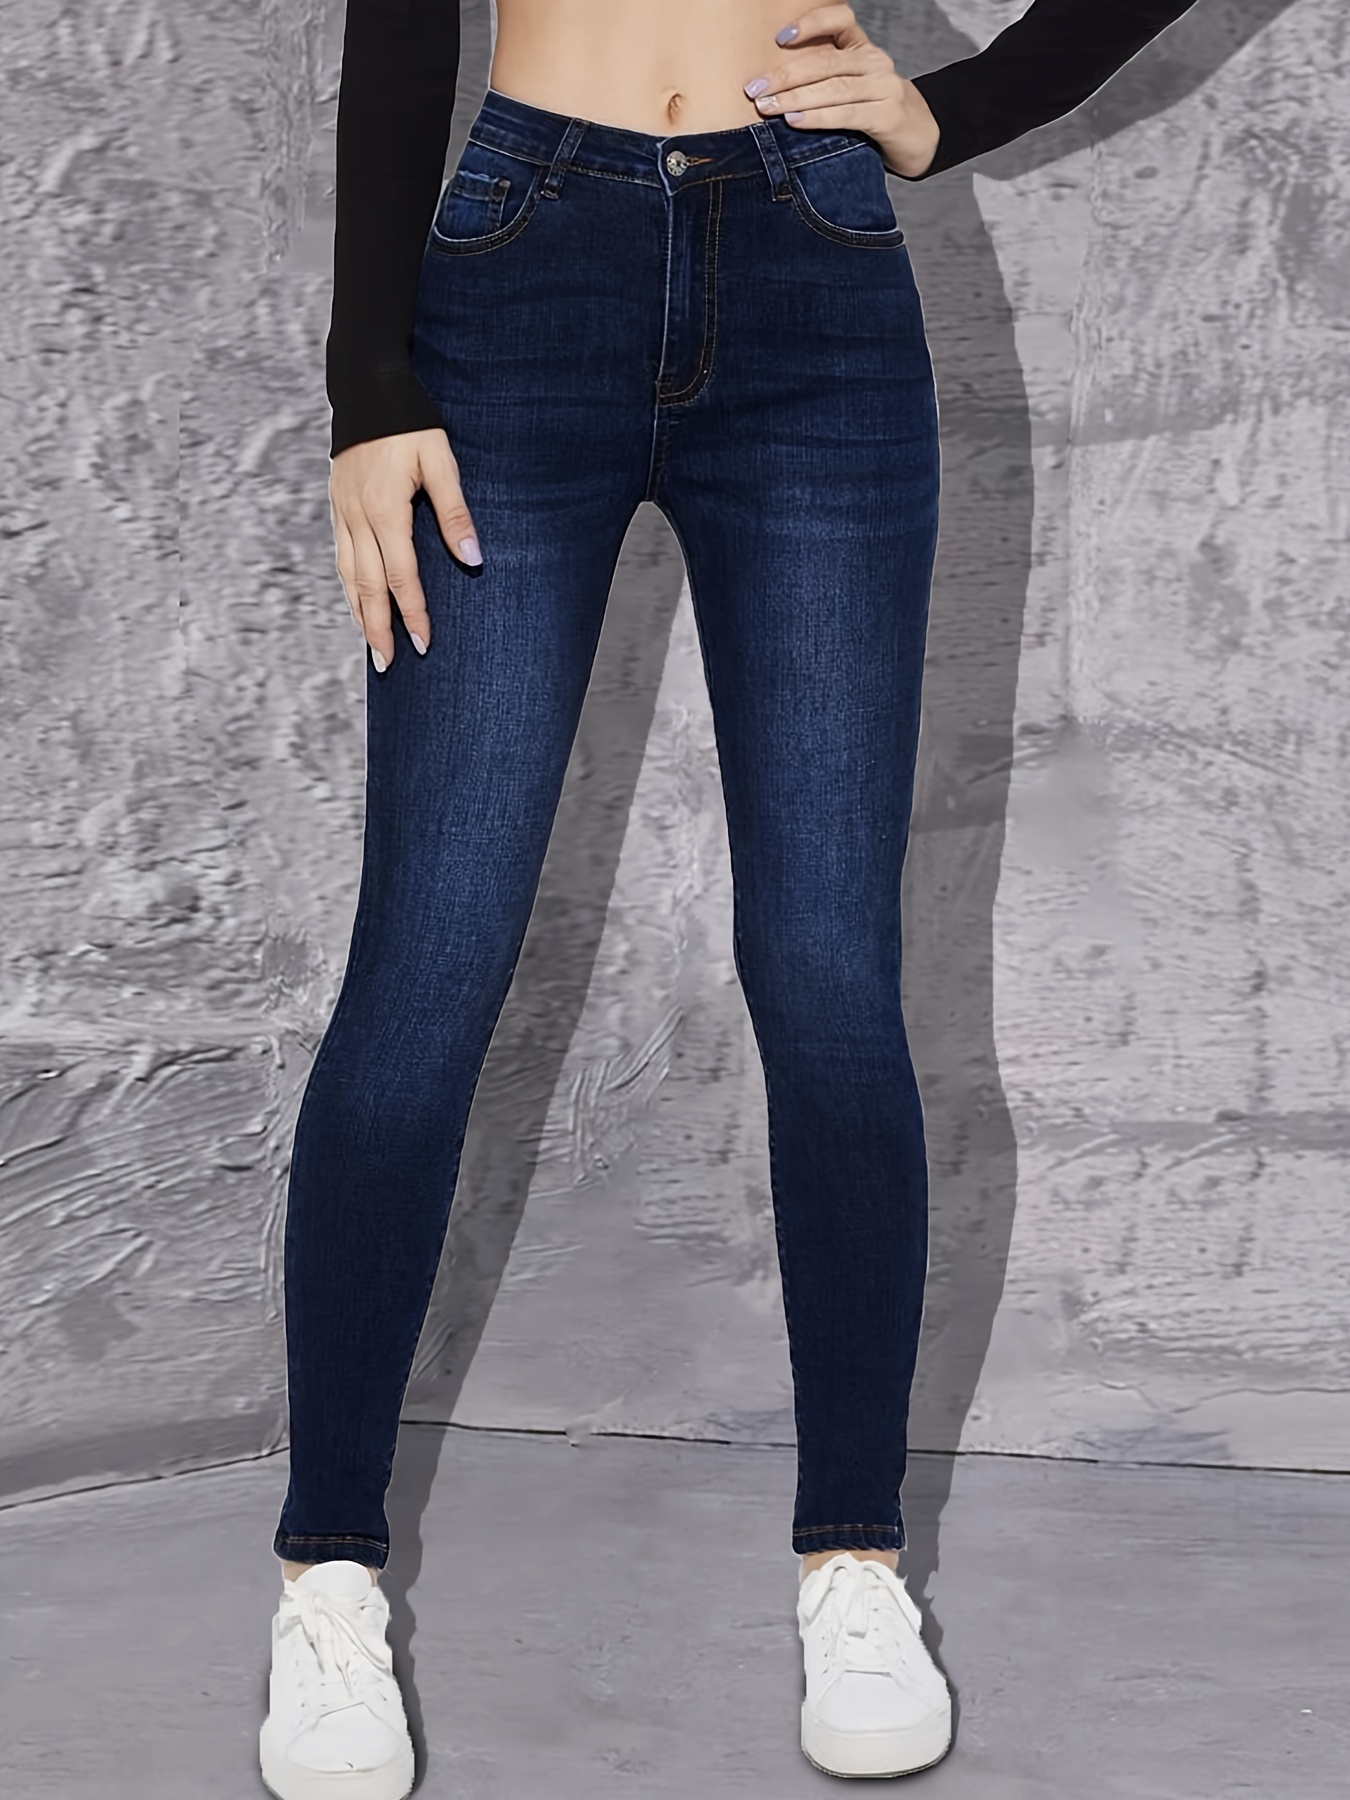 Cintura alta de la mujer jeans ajustados pantalones de mezclilla